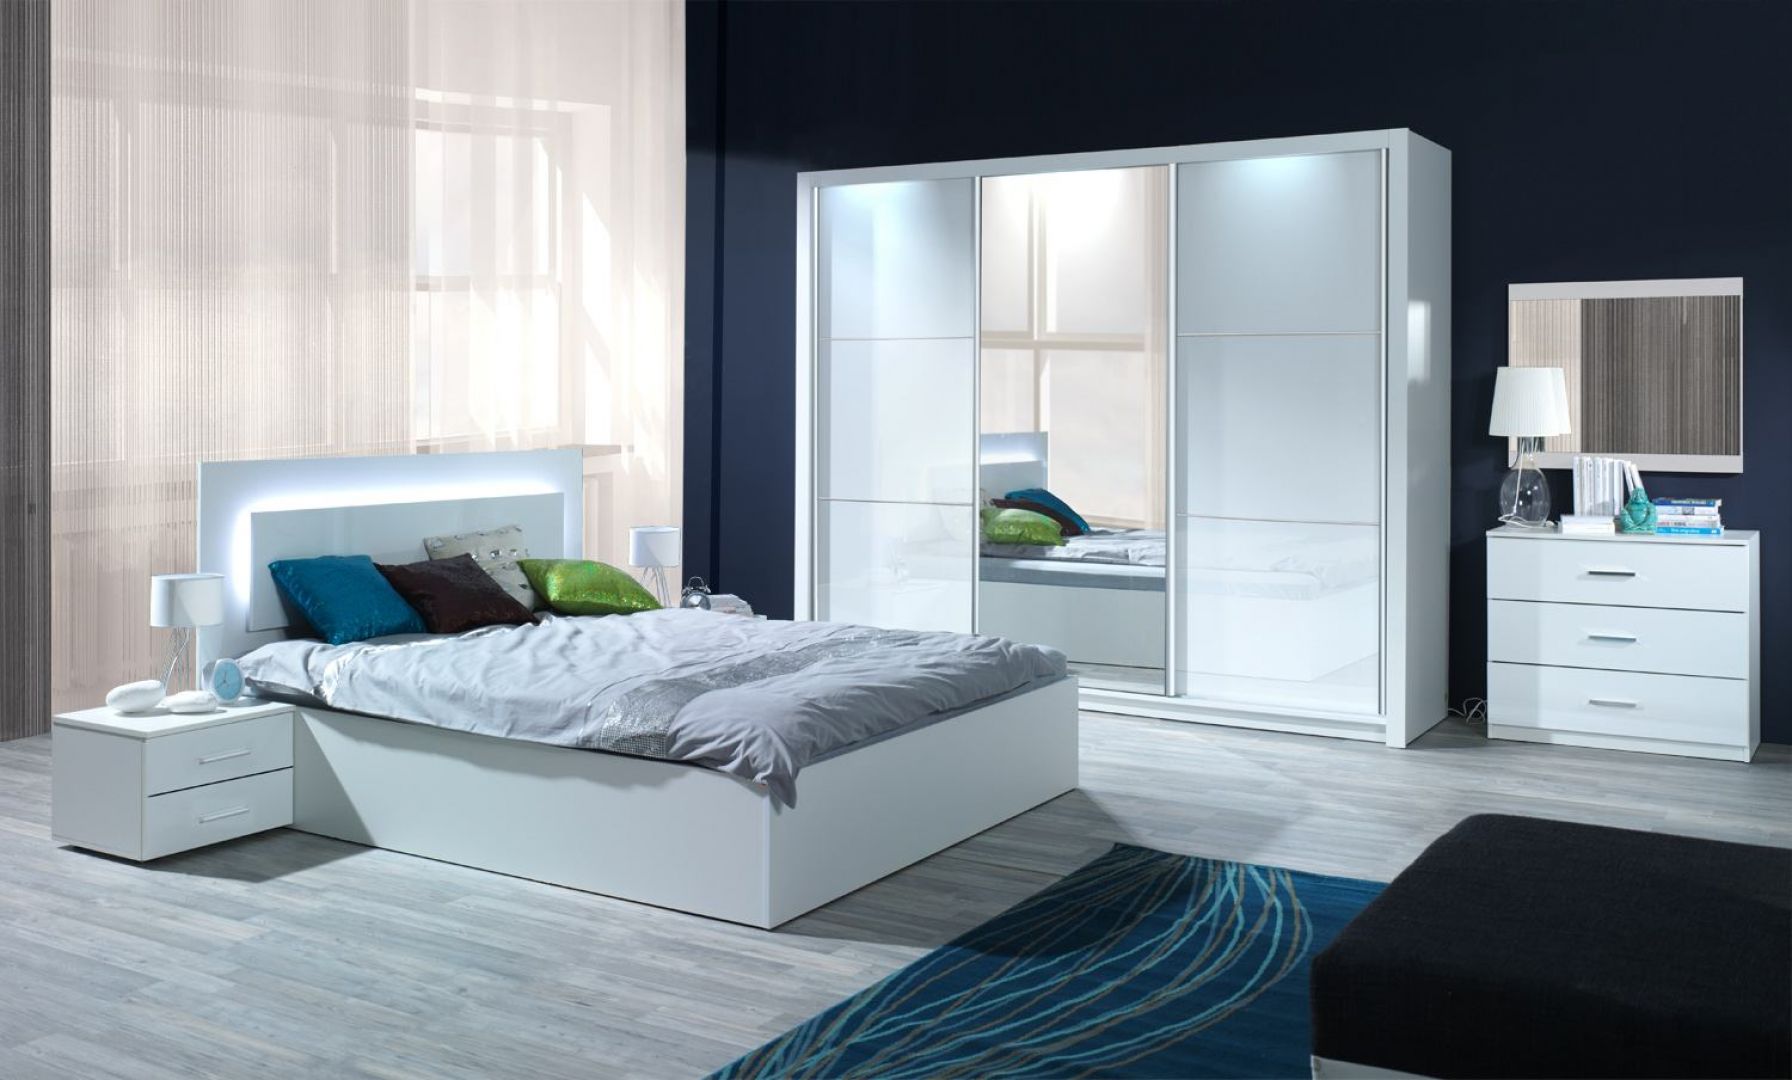 Sypialnia Siena w kolorze białym na wysoki połysk. Oparcie łóżka wyposażone jest w efektowny system oświetlania. Cena łóżka ok. 670 zł. Fot. Agata Meble 